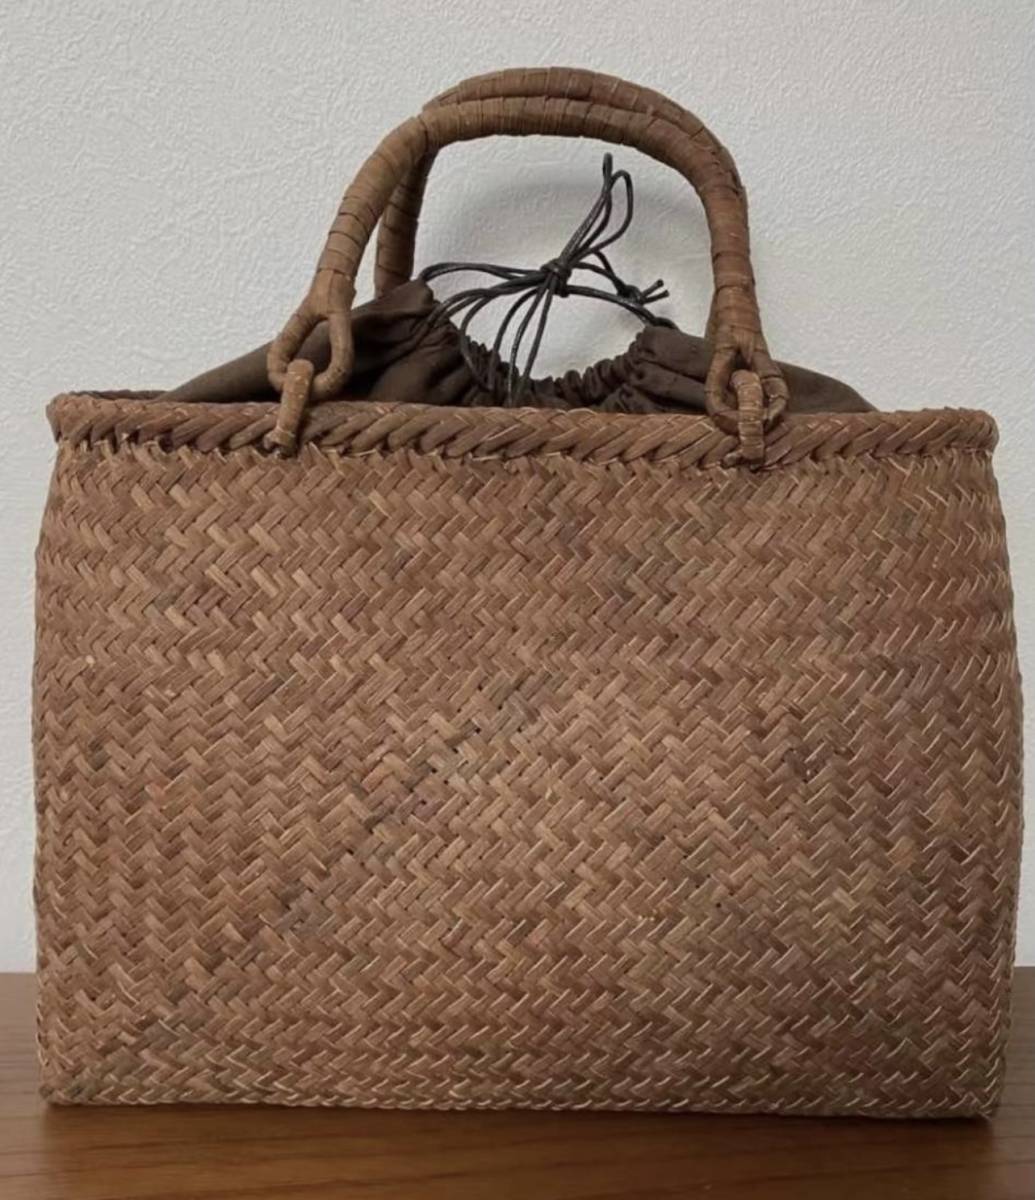 長野産未使用品 一番皮 3ミリ蔓 職人手編み 極細編み 山葡萄籠バッグ